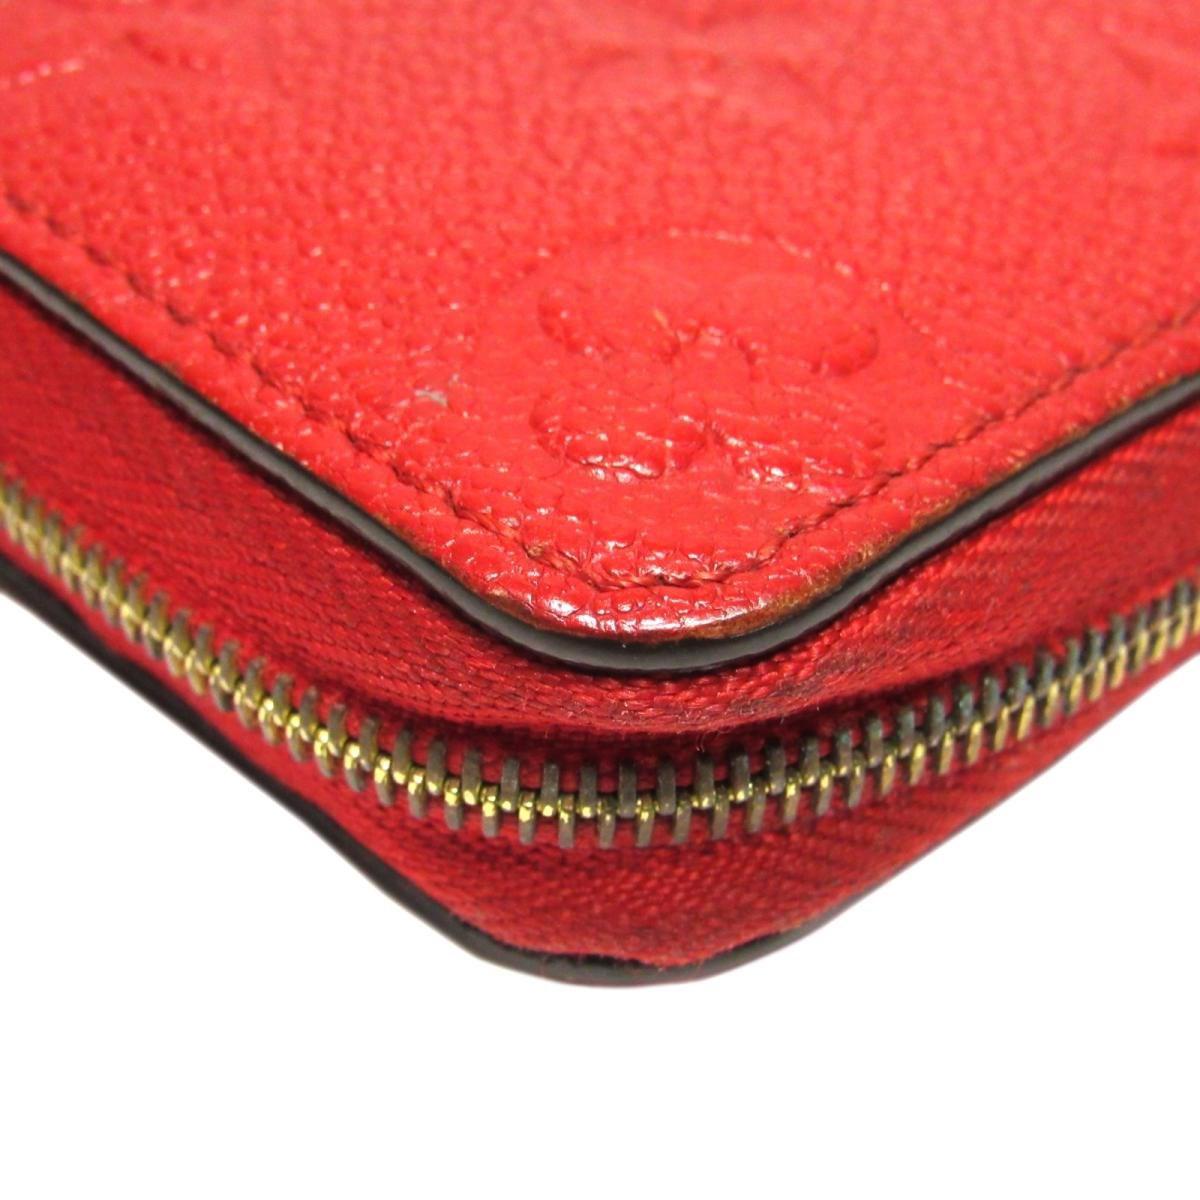 Lyst - Louis Vuitton Auth Zippy Wallet Purse Coin Case M60740 Monogram Empreinte Cerise in Red